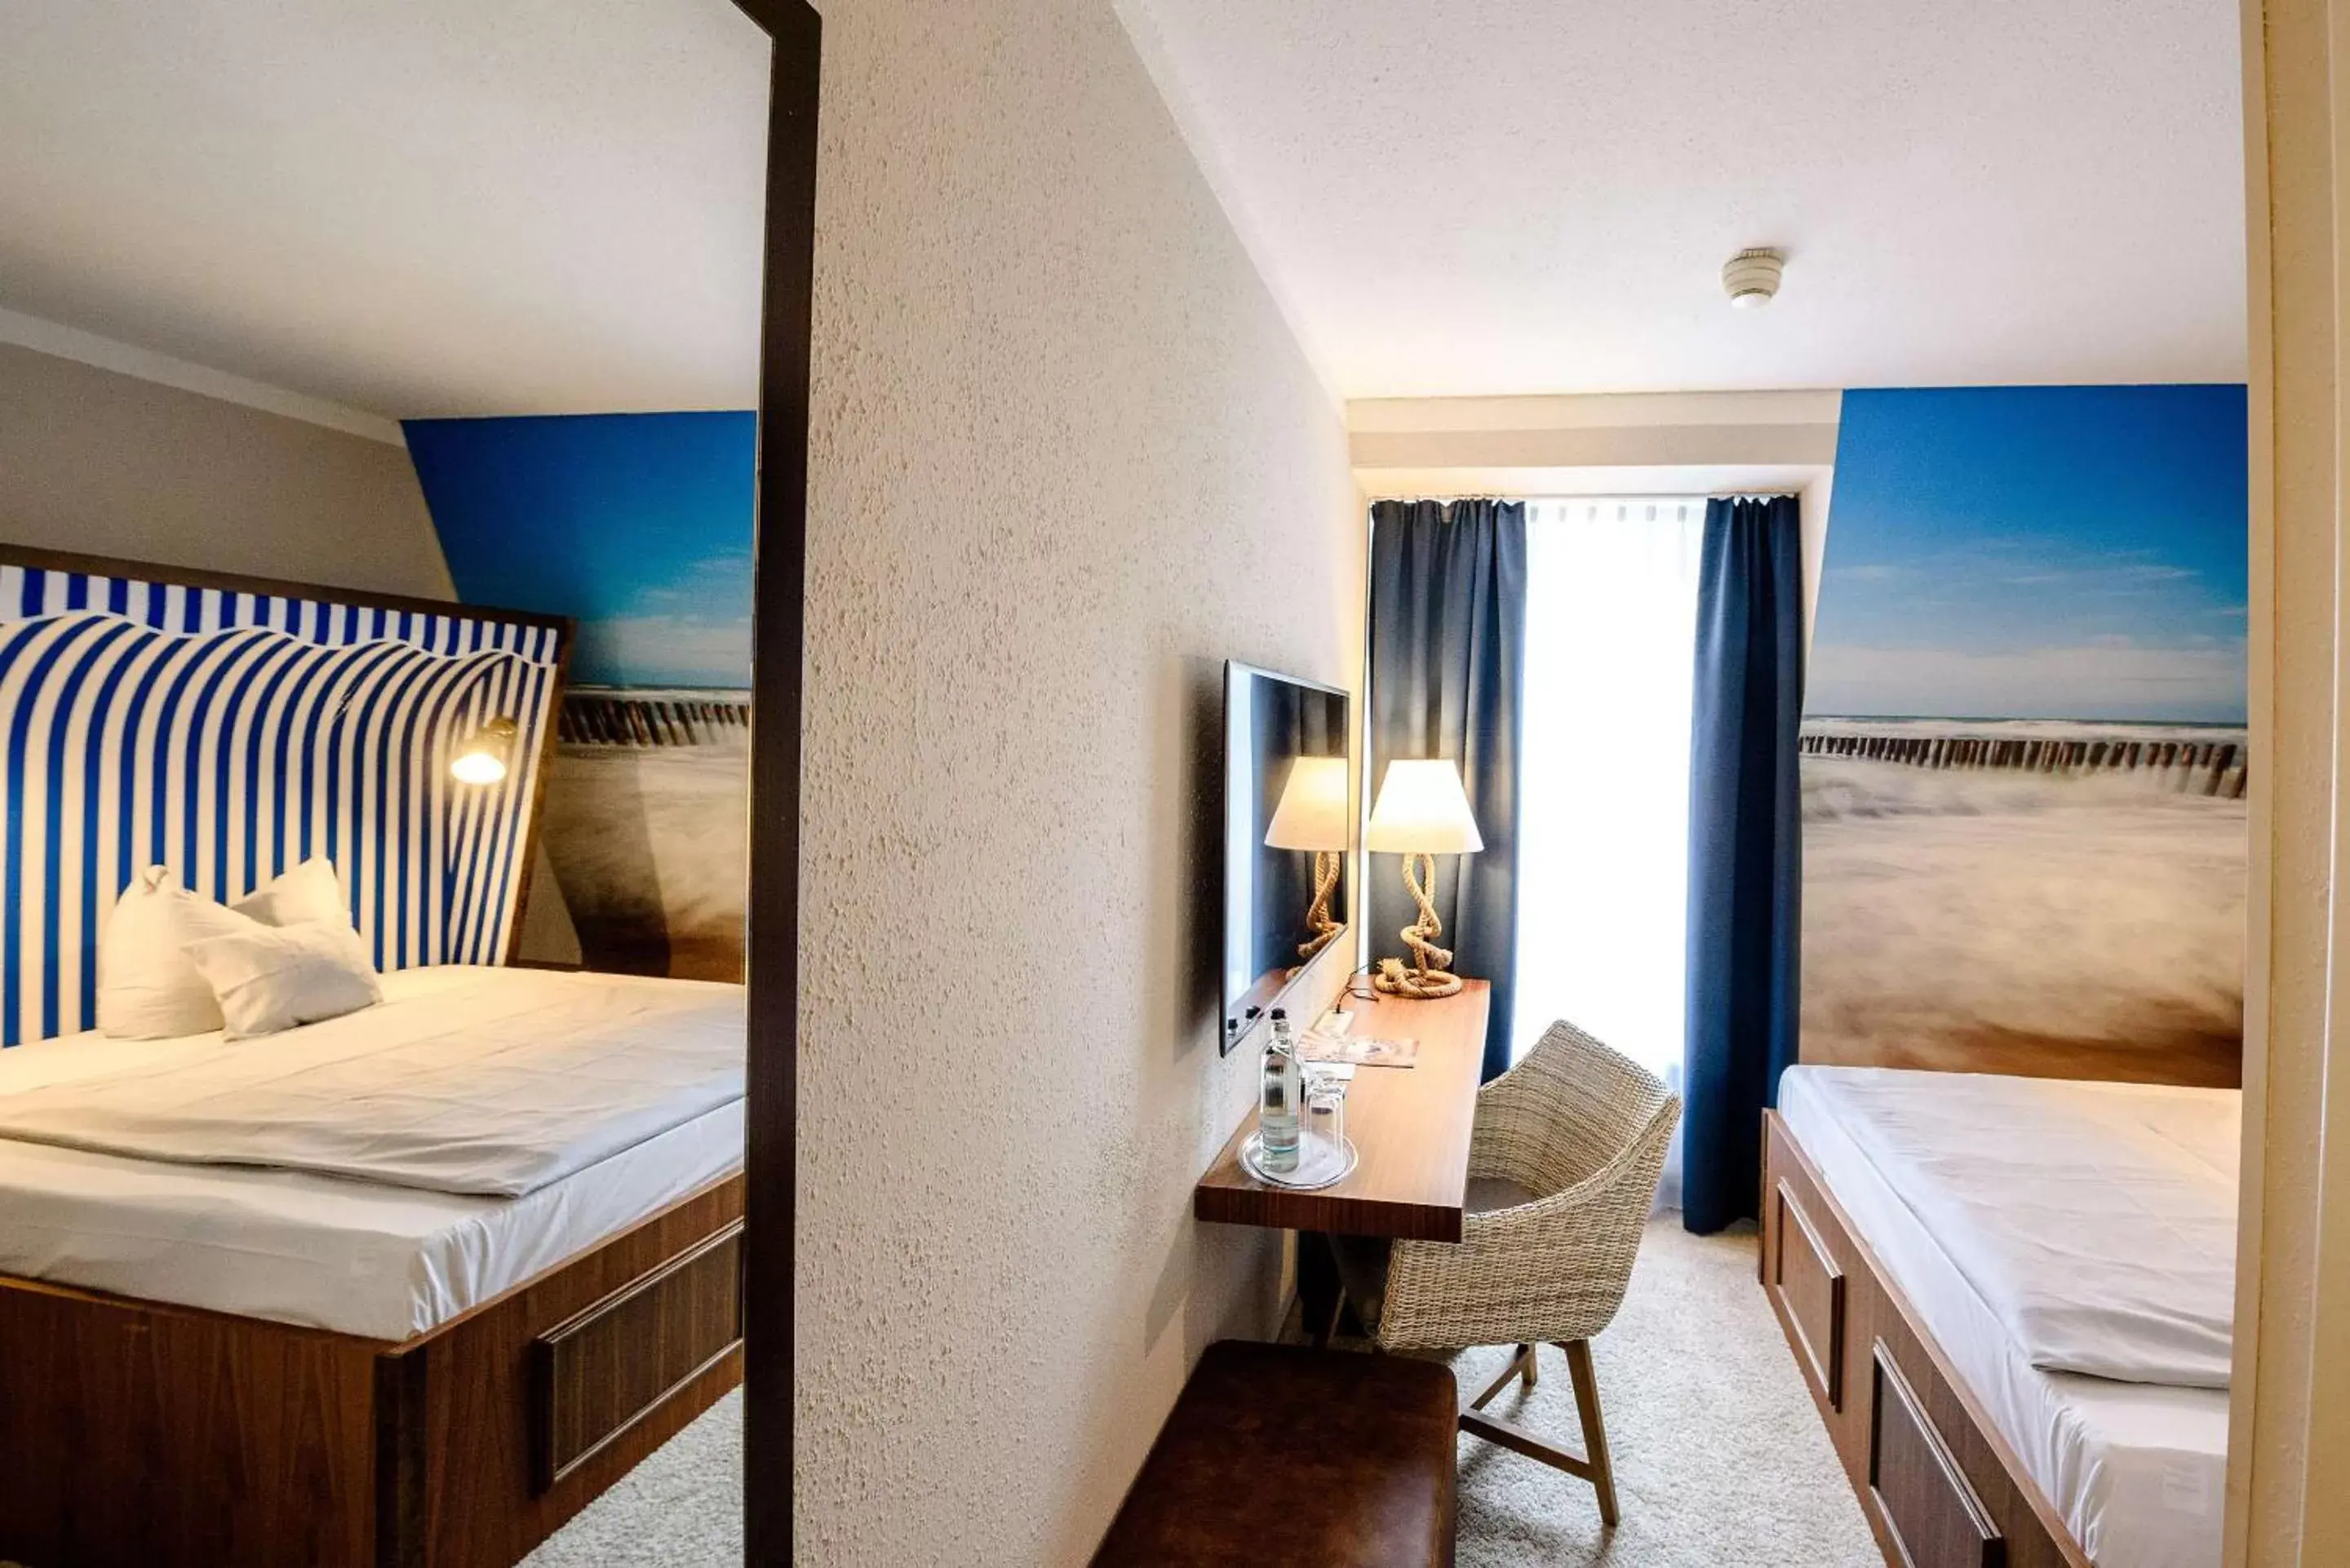 Bedroom, Bed in Dorint Hotel Alzey/Worms